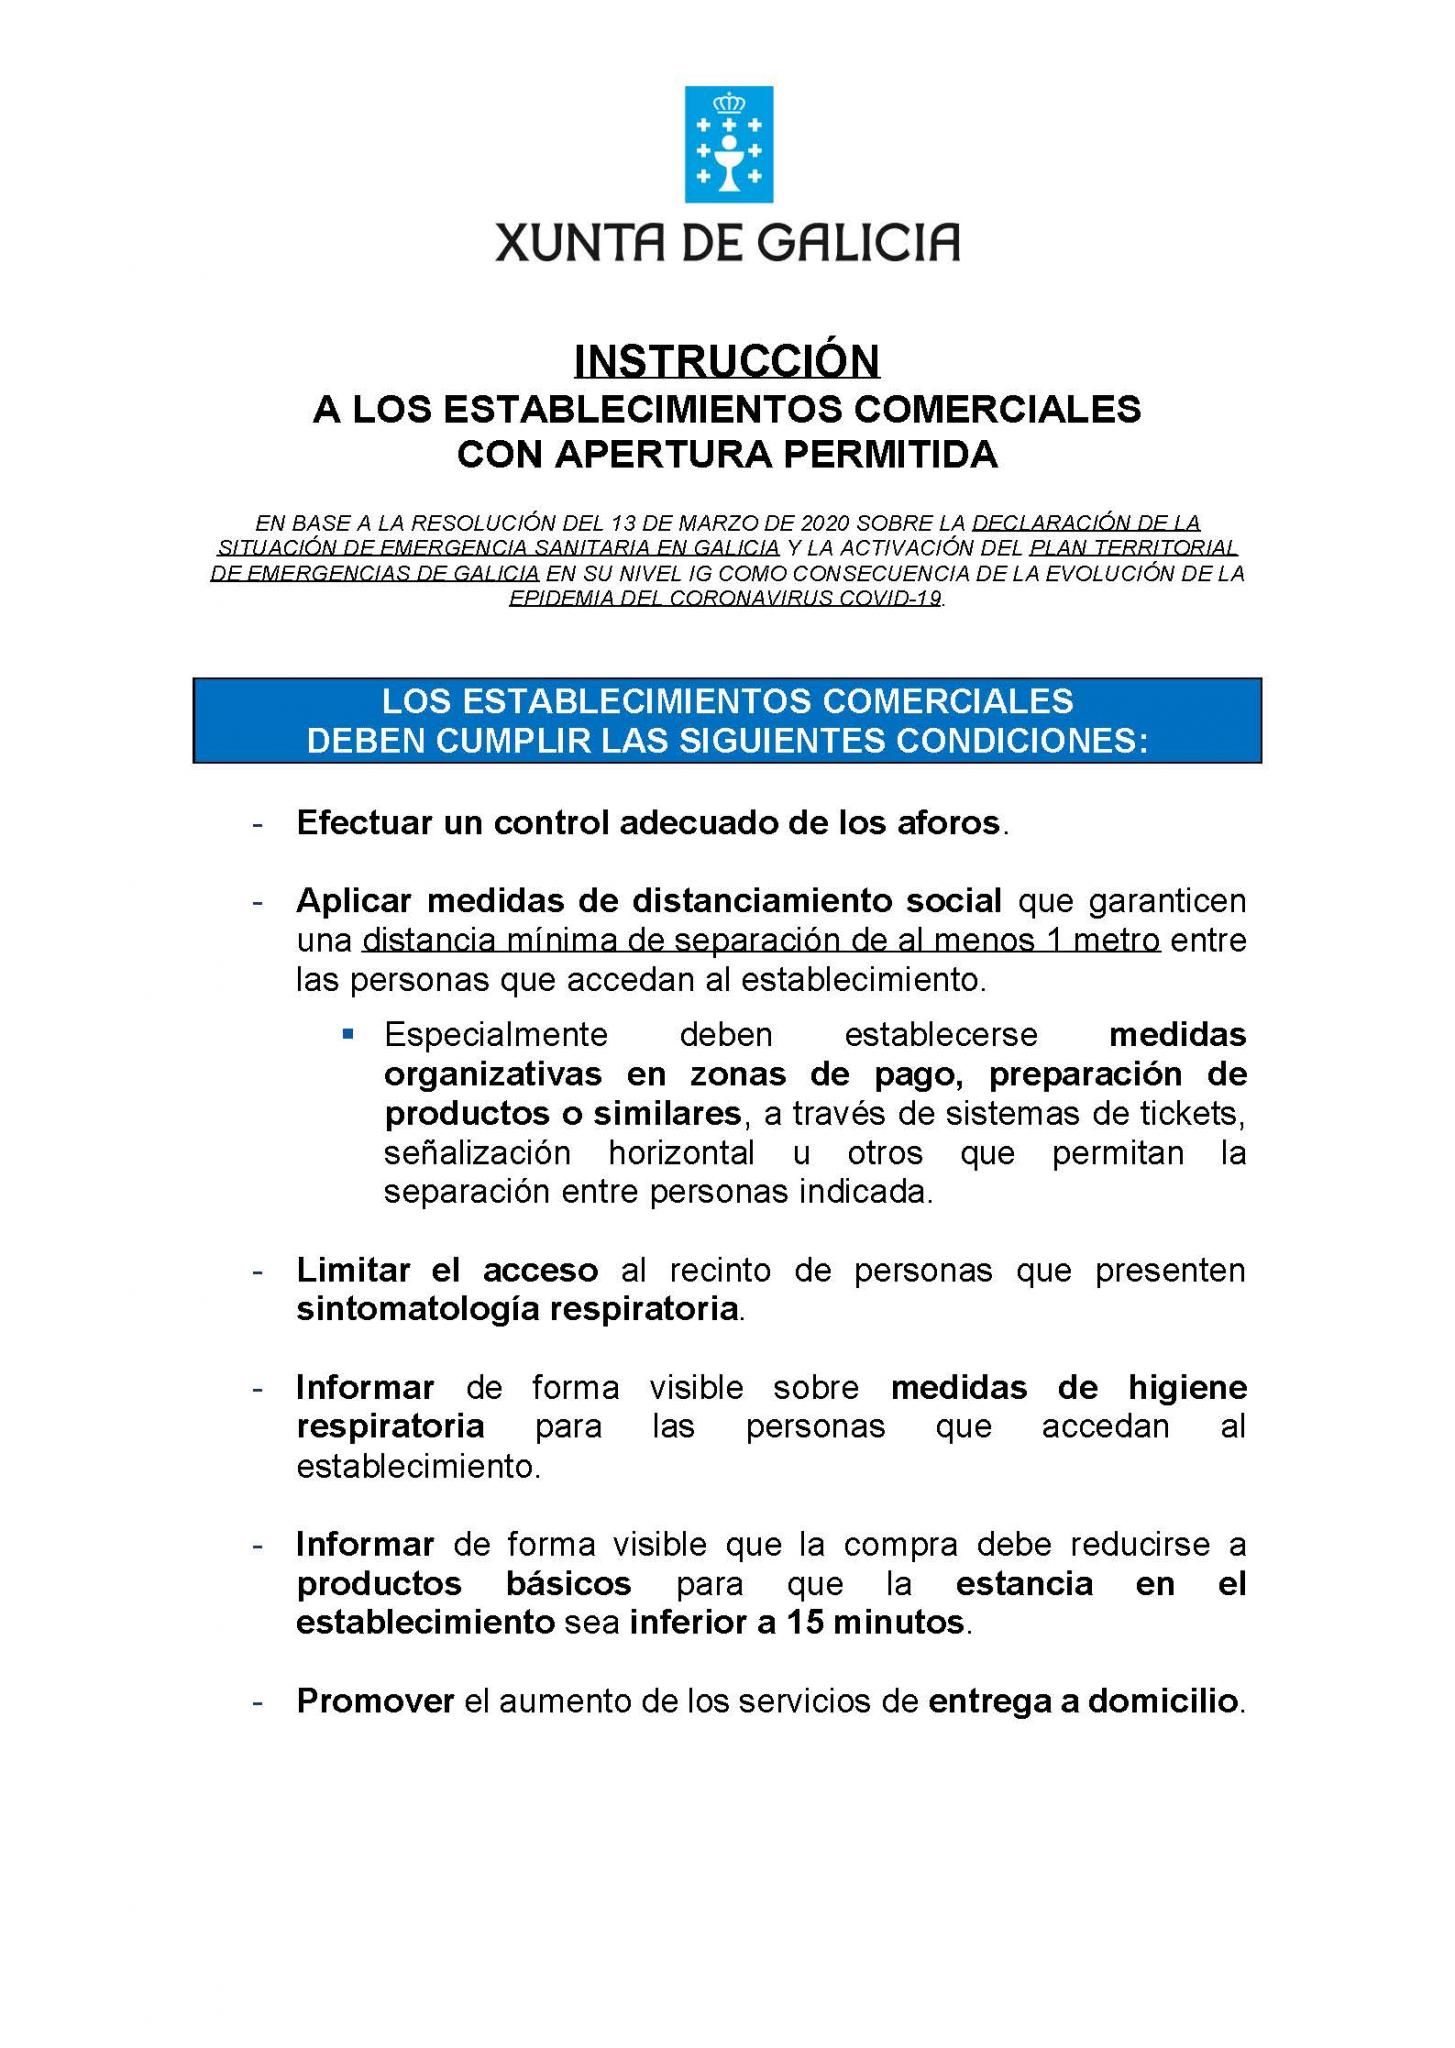 INSTRUCCIÓN ESTABLECIMIENTOS COMERCIALES COVID-19.jpg